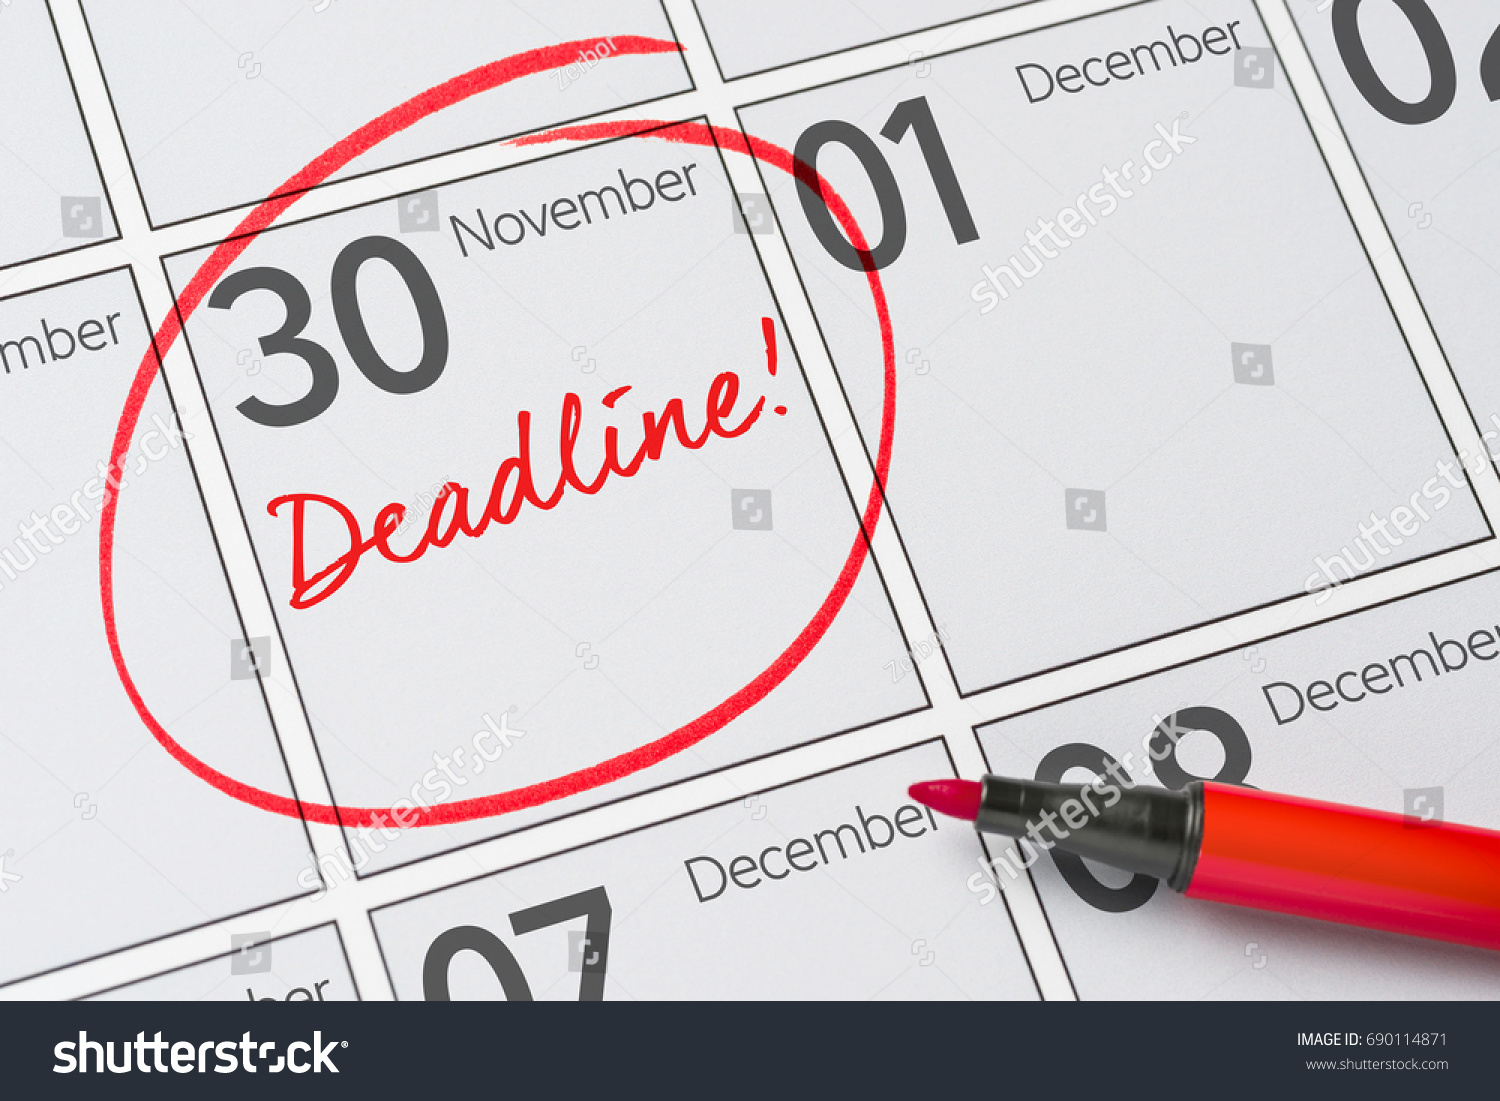 Deadline written on a calendar - November 30 #690114871